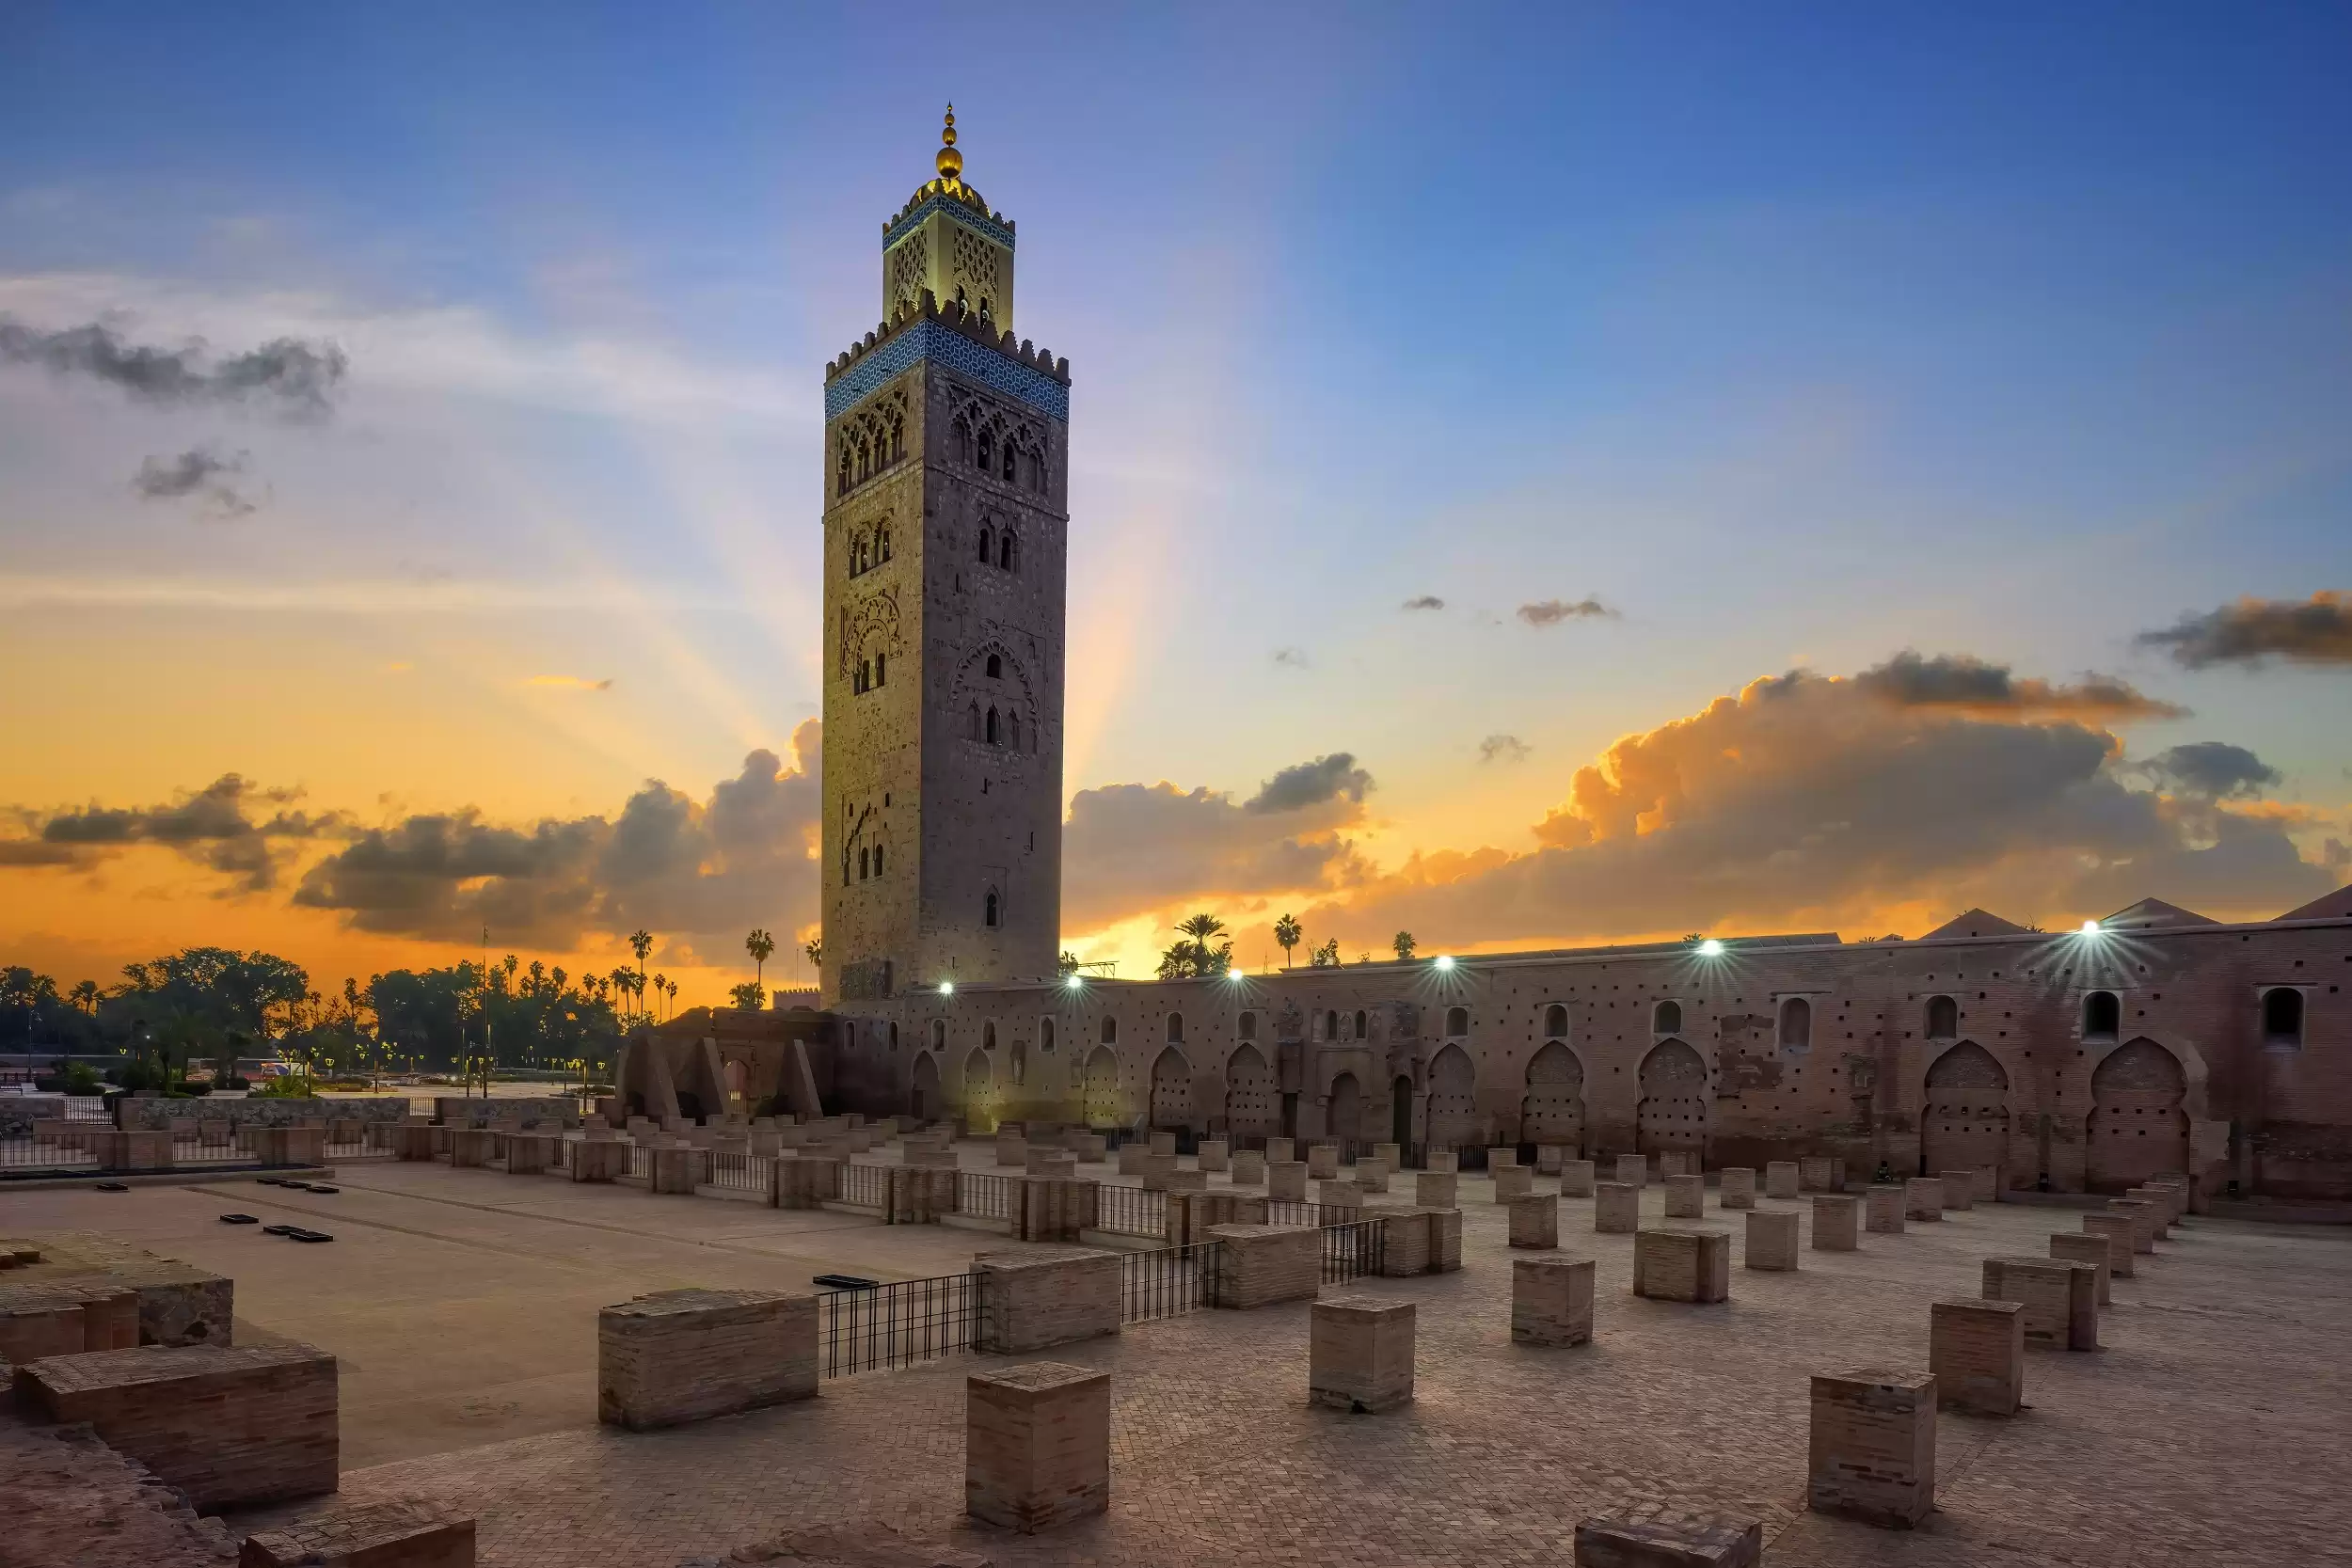 Maravillas arquitectónicas de Marrakech: Testimonio de su importancia histórica